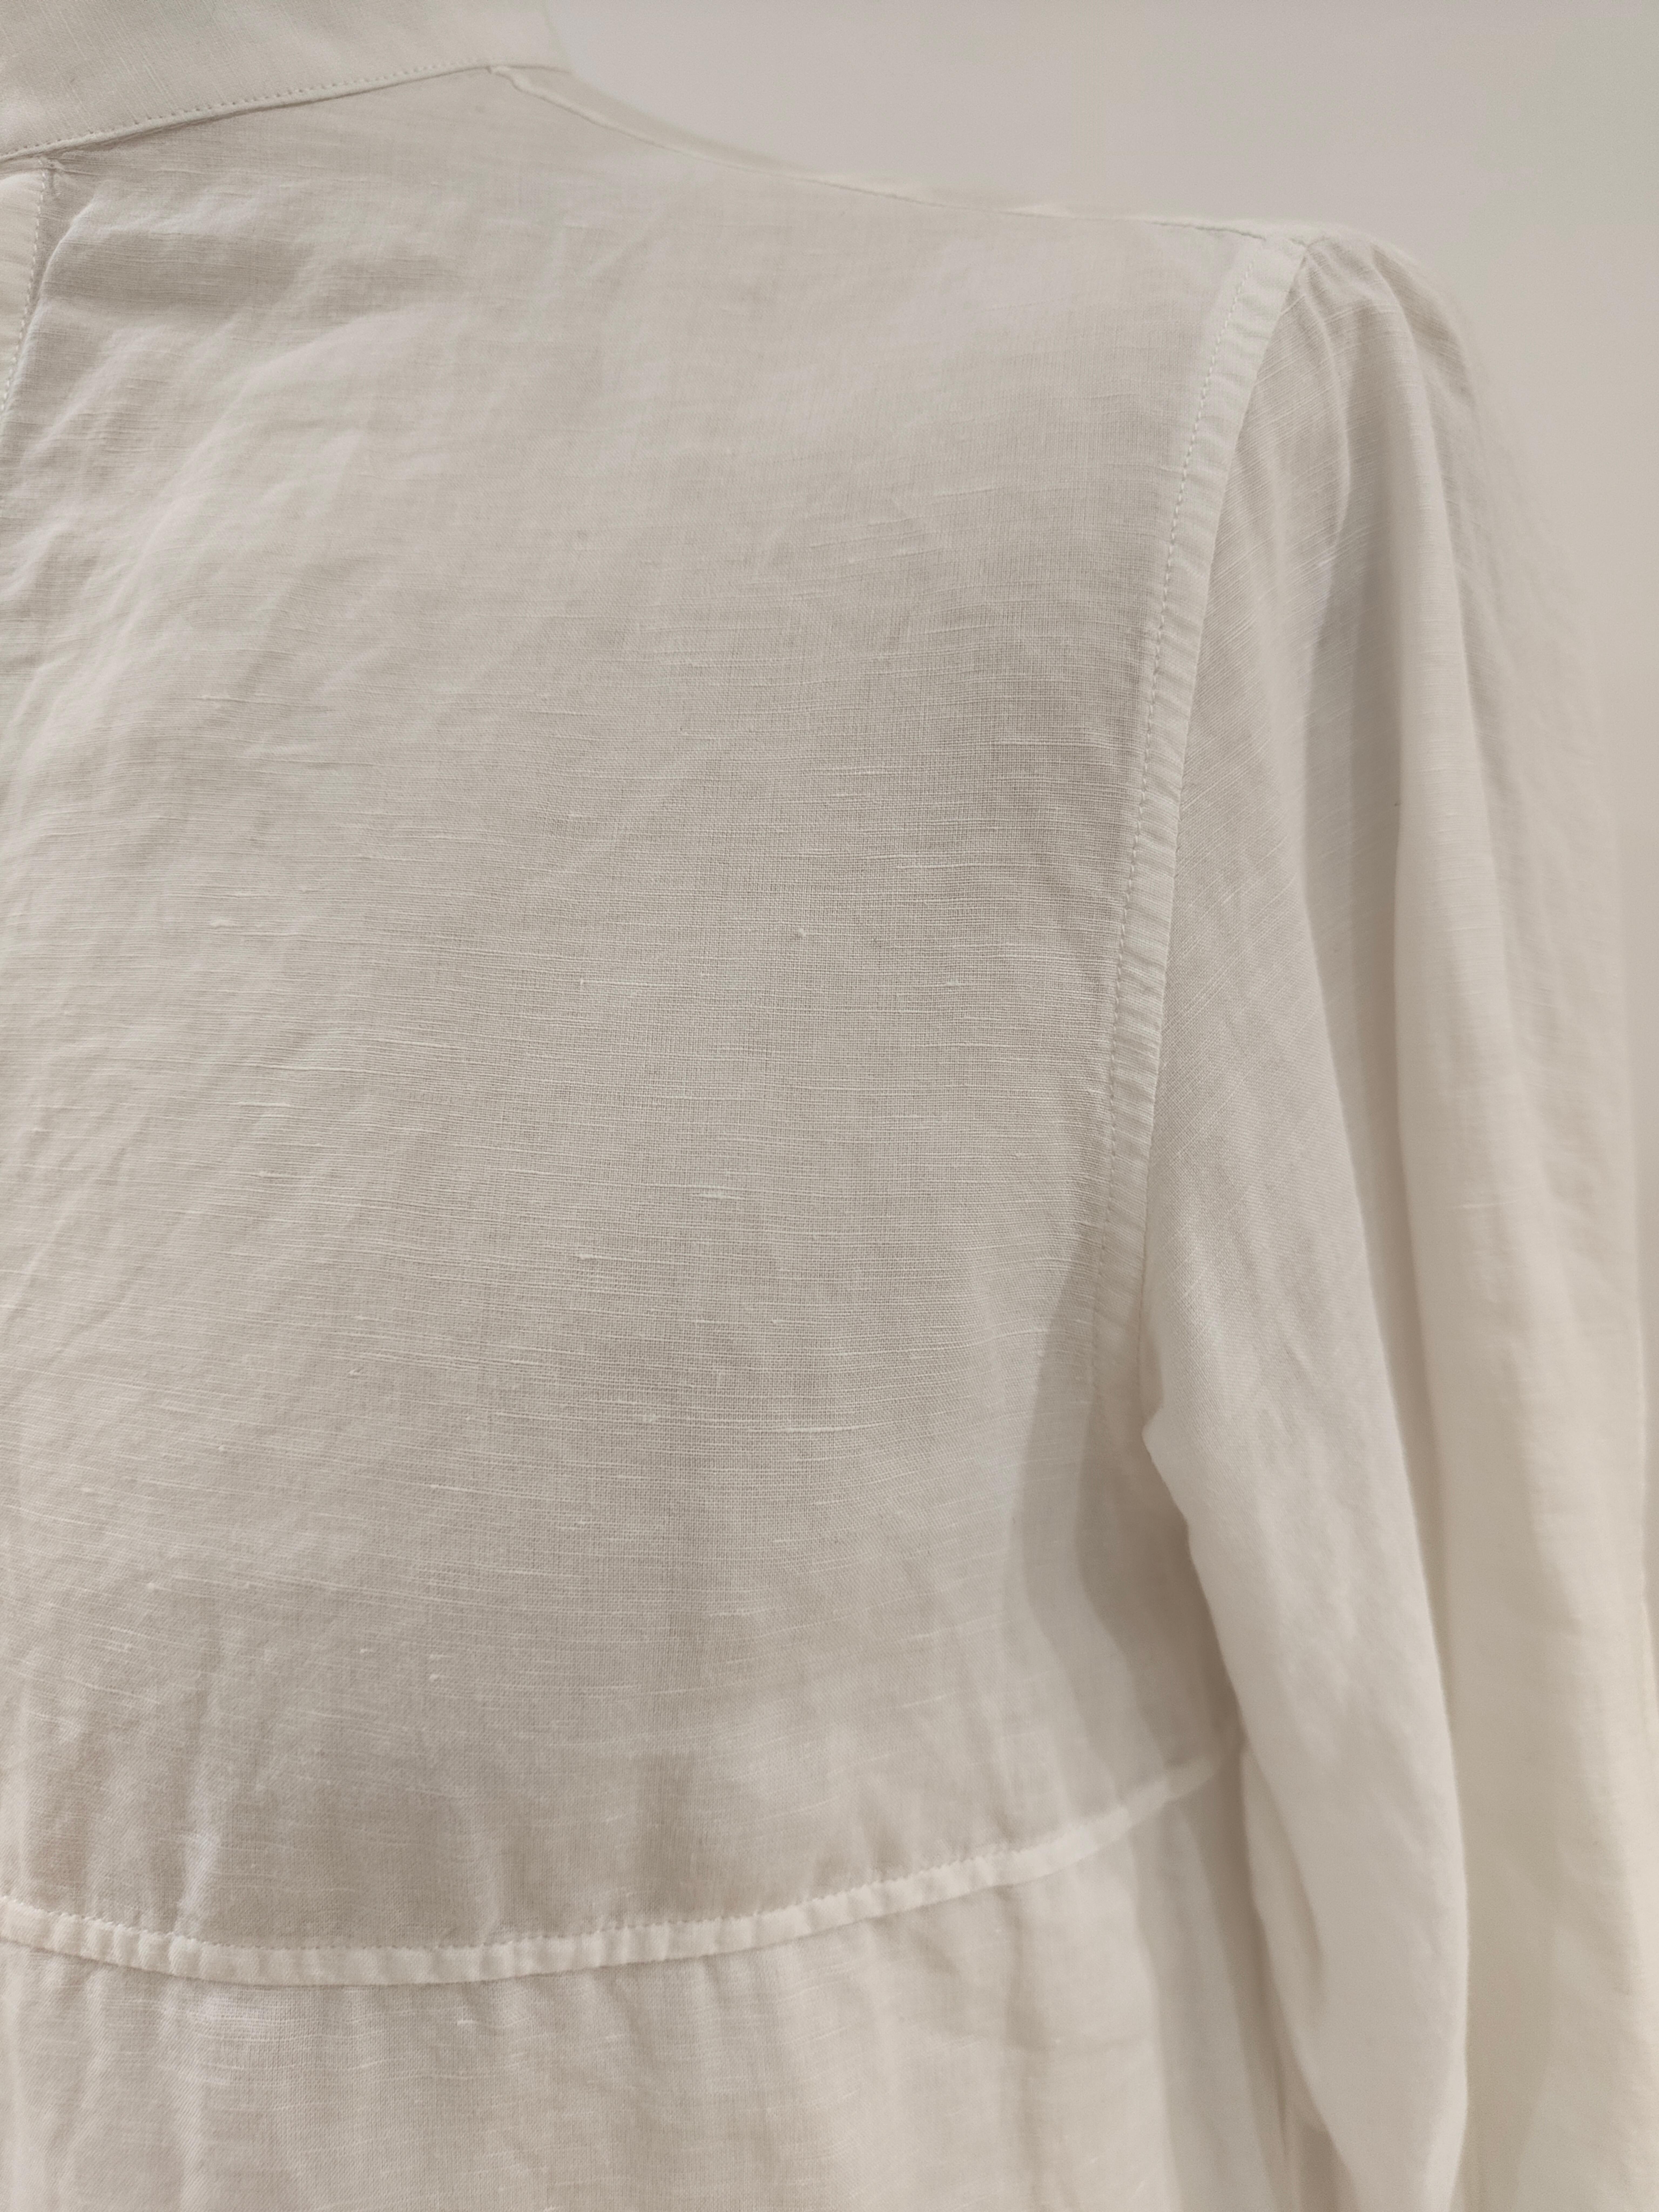 Women's or Men's Balenciaga white linen shirt For Sale